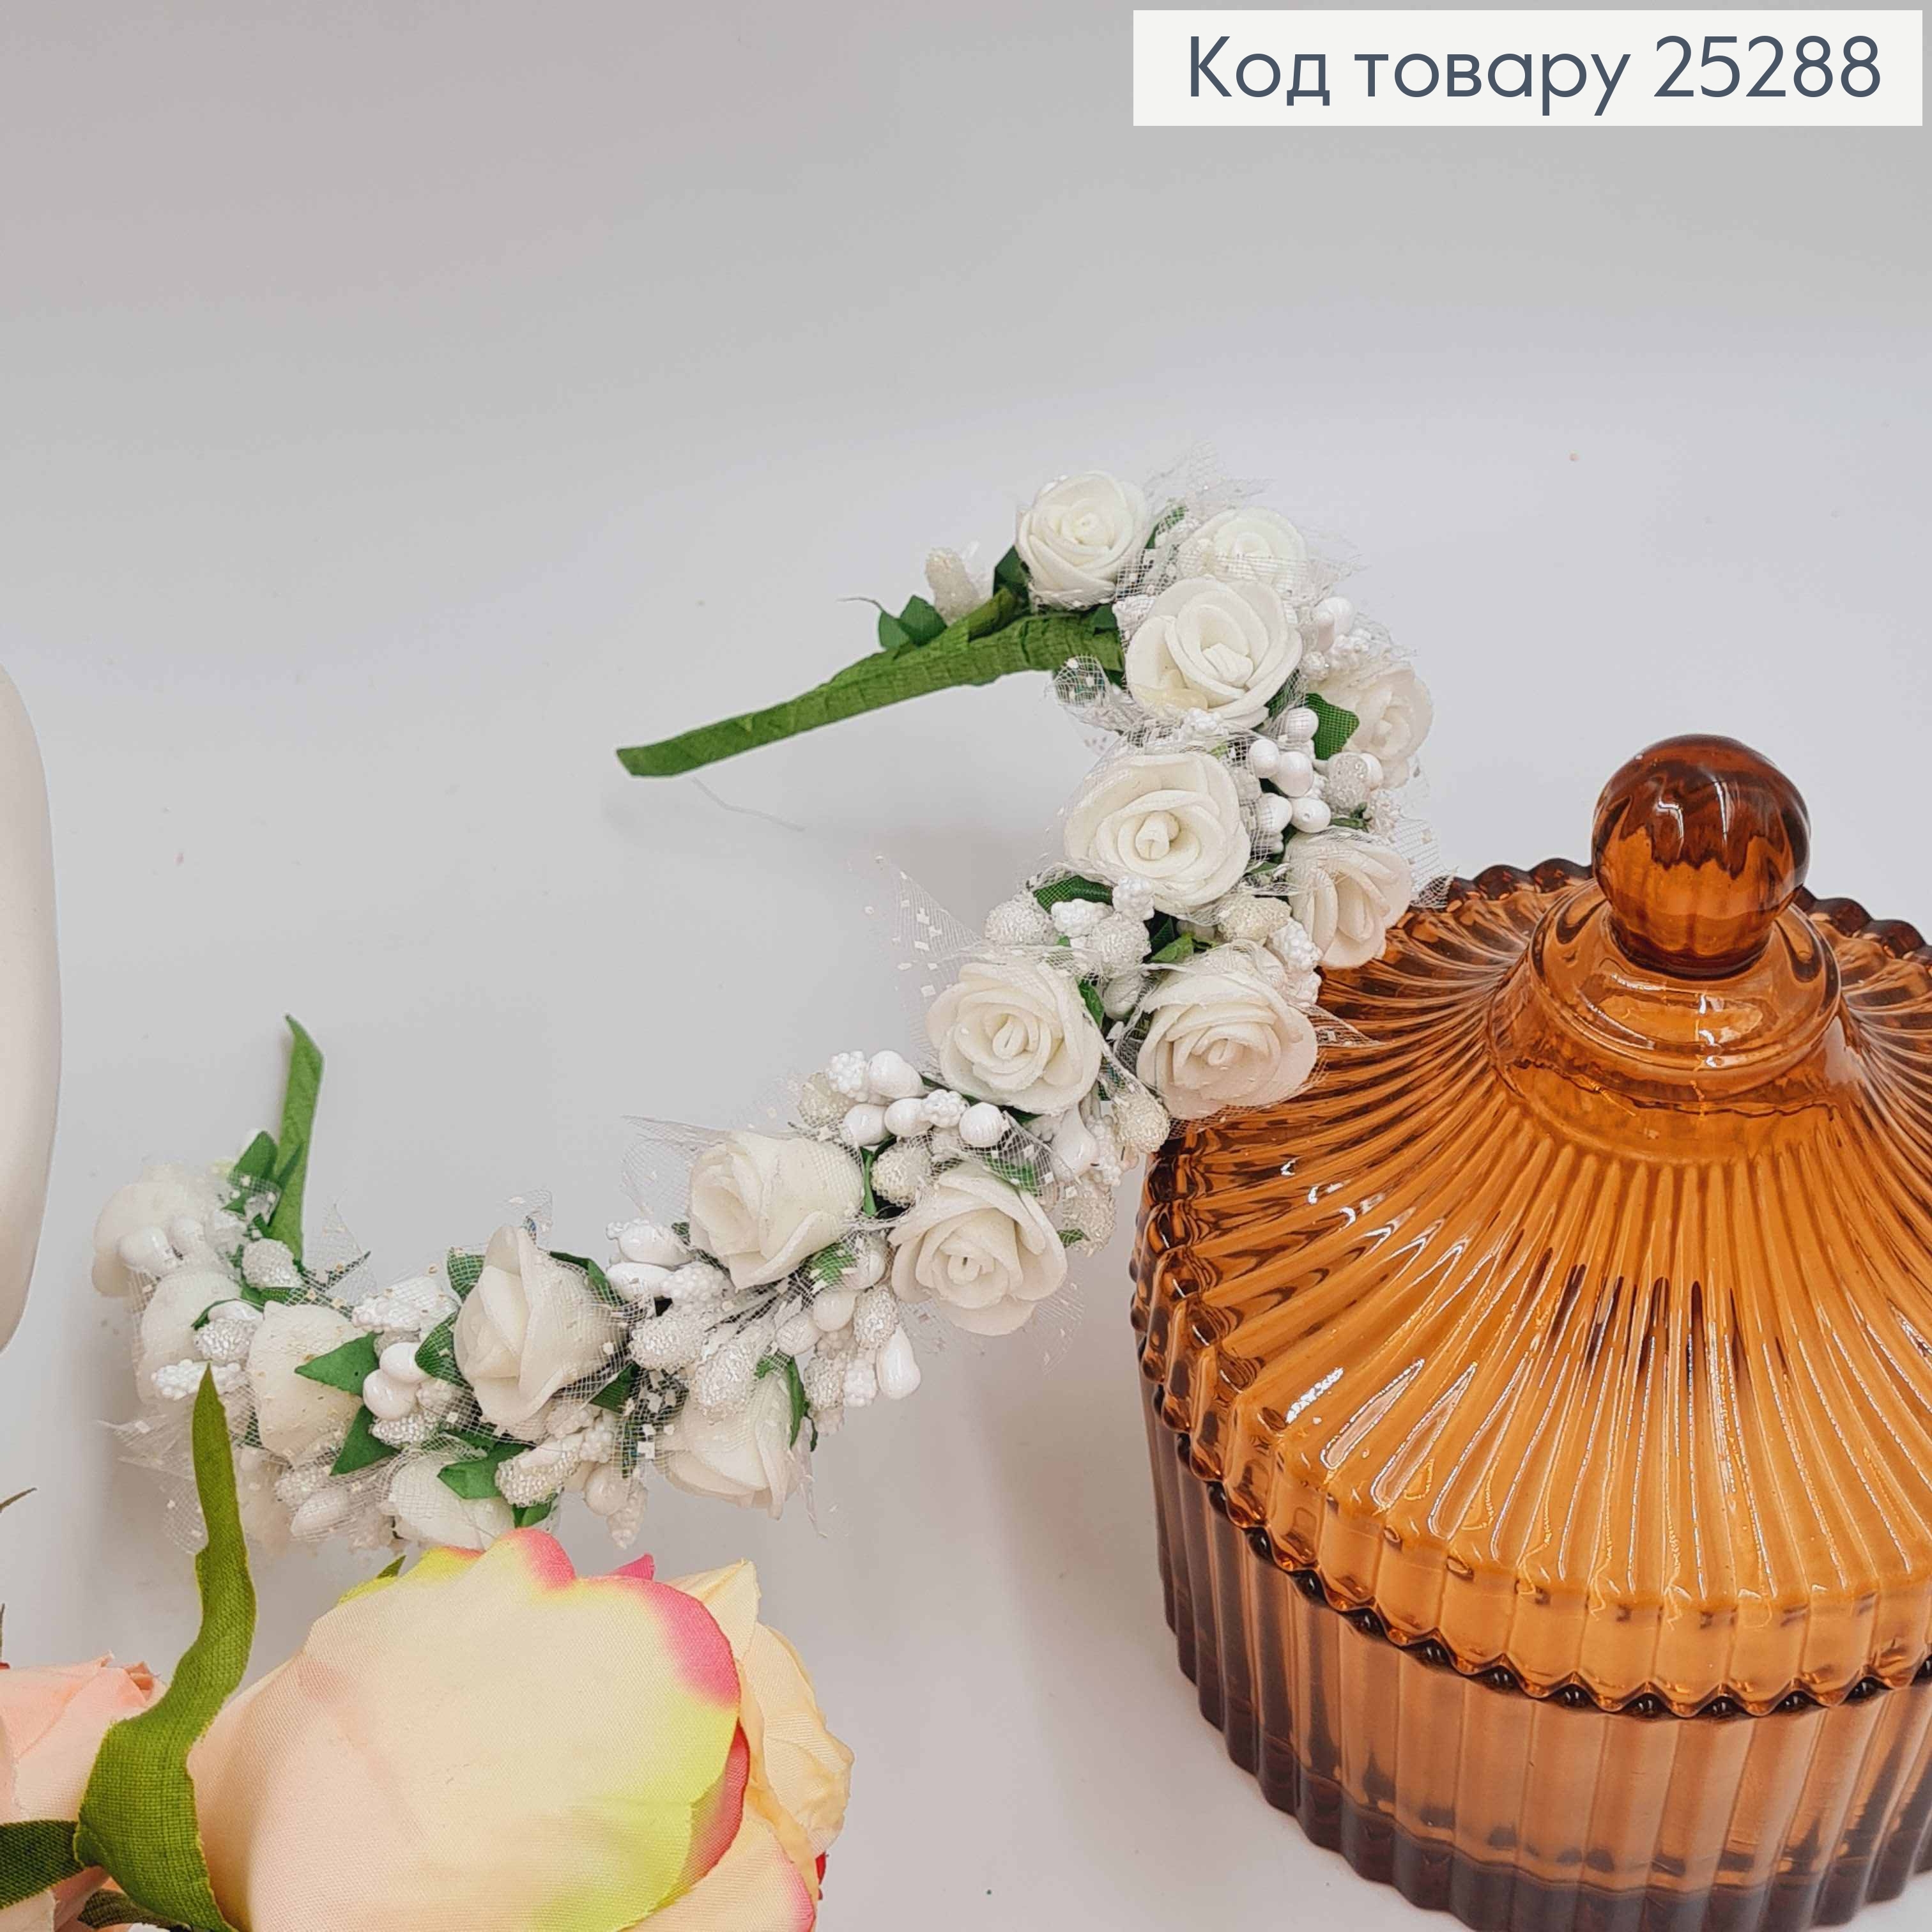 Обруч - венчик розы БЕЛОГО цвета с фатином, основа - металл, ручная работа, Украина. 25288 фото 3